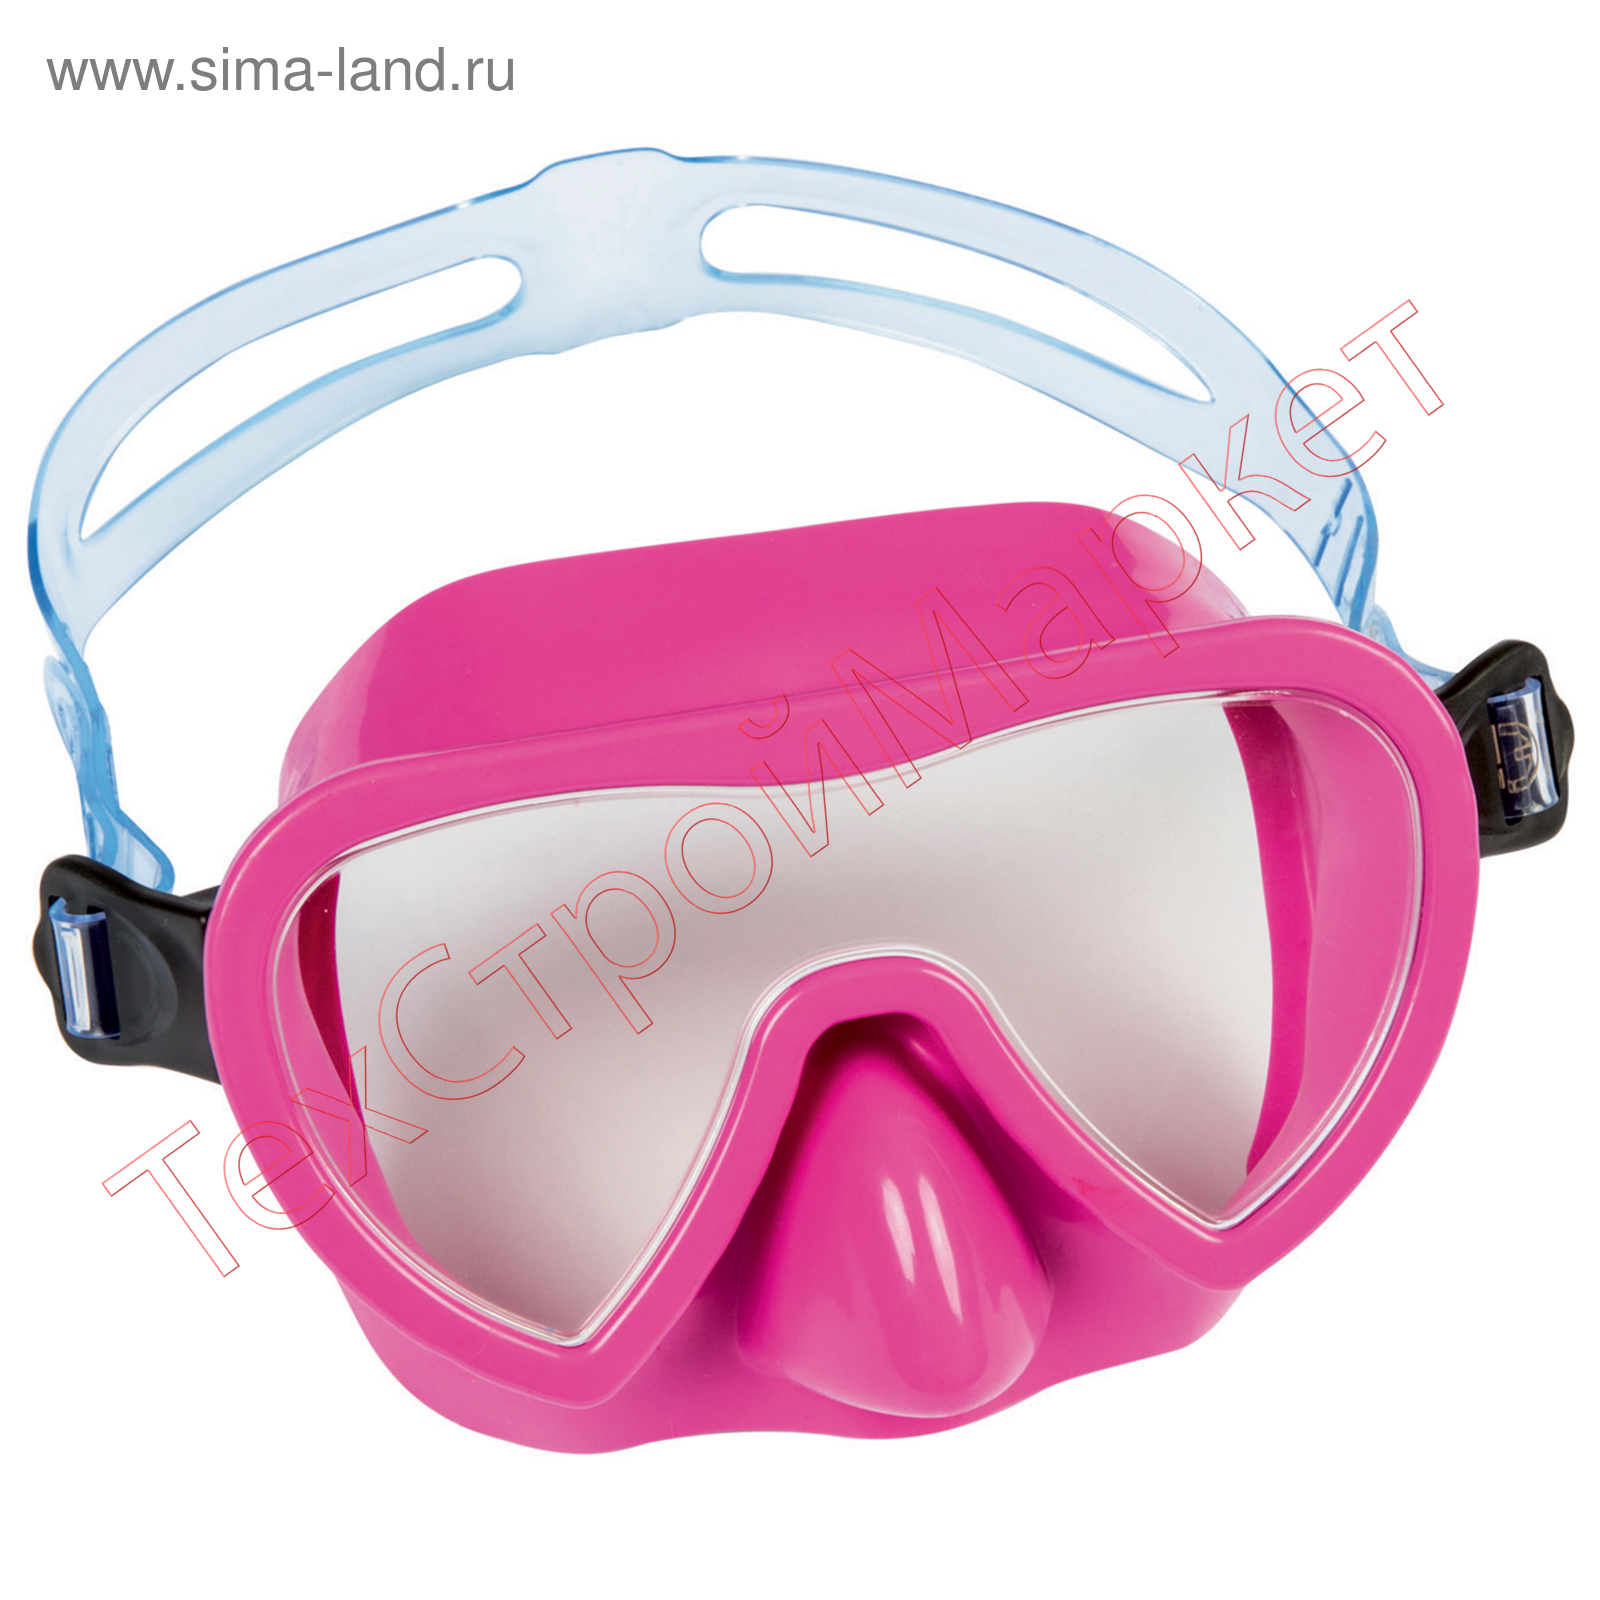 Лучшие маски для плавания. Bestway маска для снорклинга. Маска Бествей для плавания. Маска для плавания Bestway OMNIVIEW. Маска для ныряния Bestway.